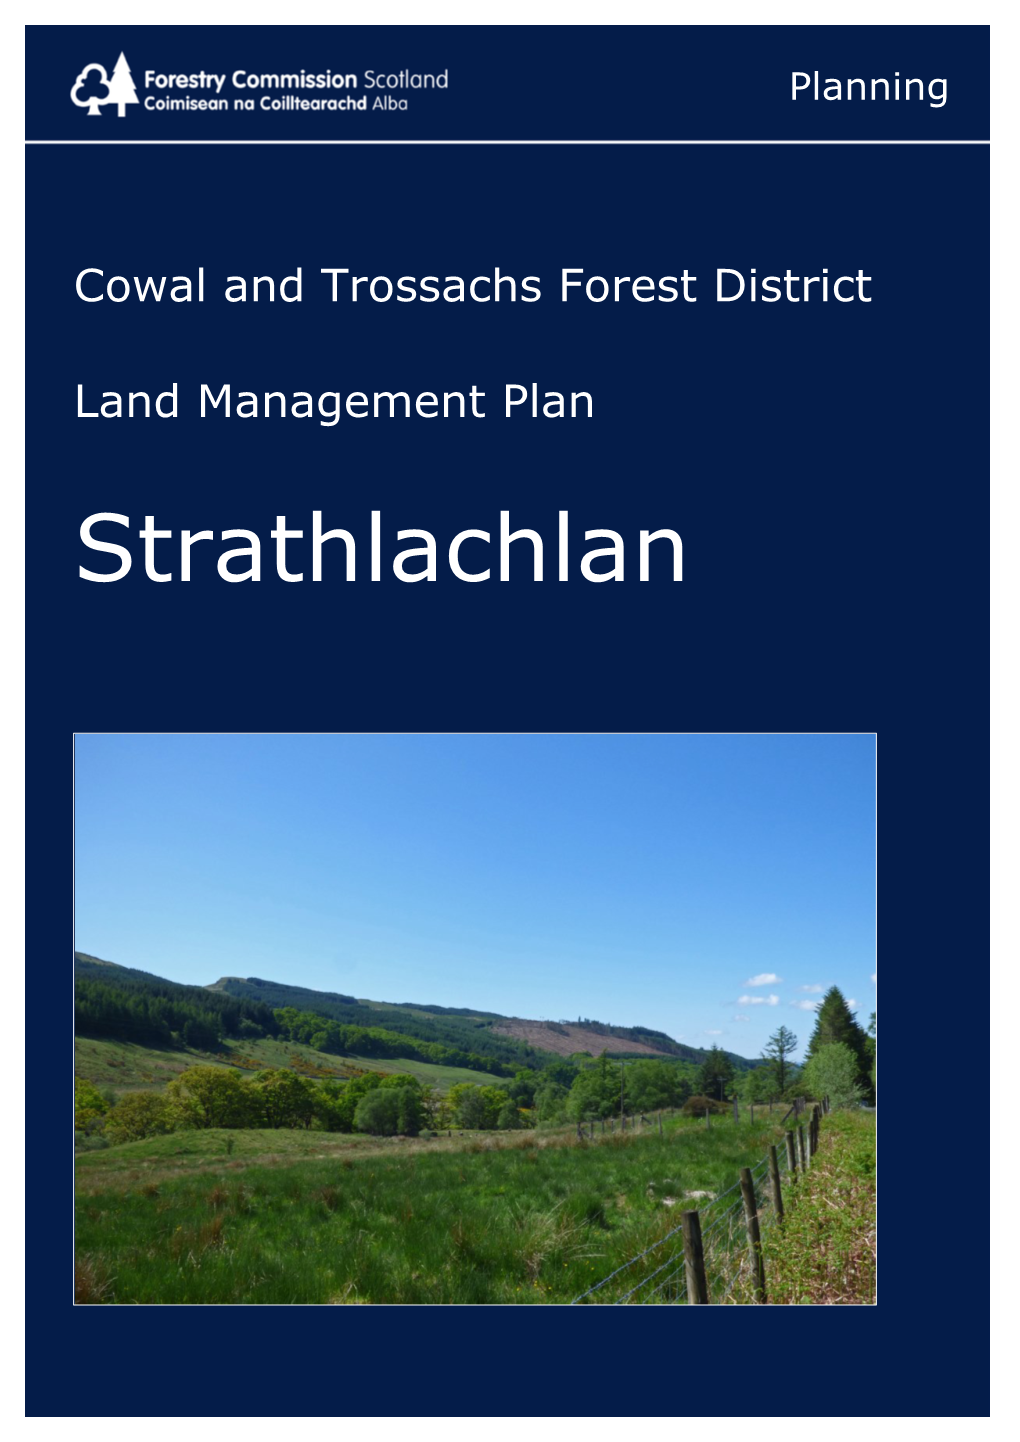 Strathlachlan Land Management Plan 2017-2027